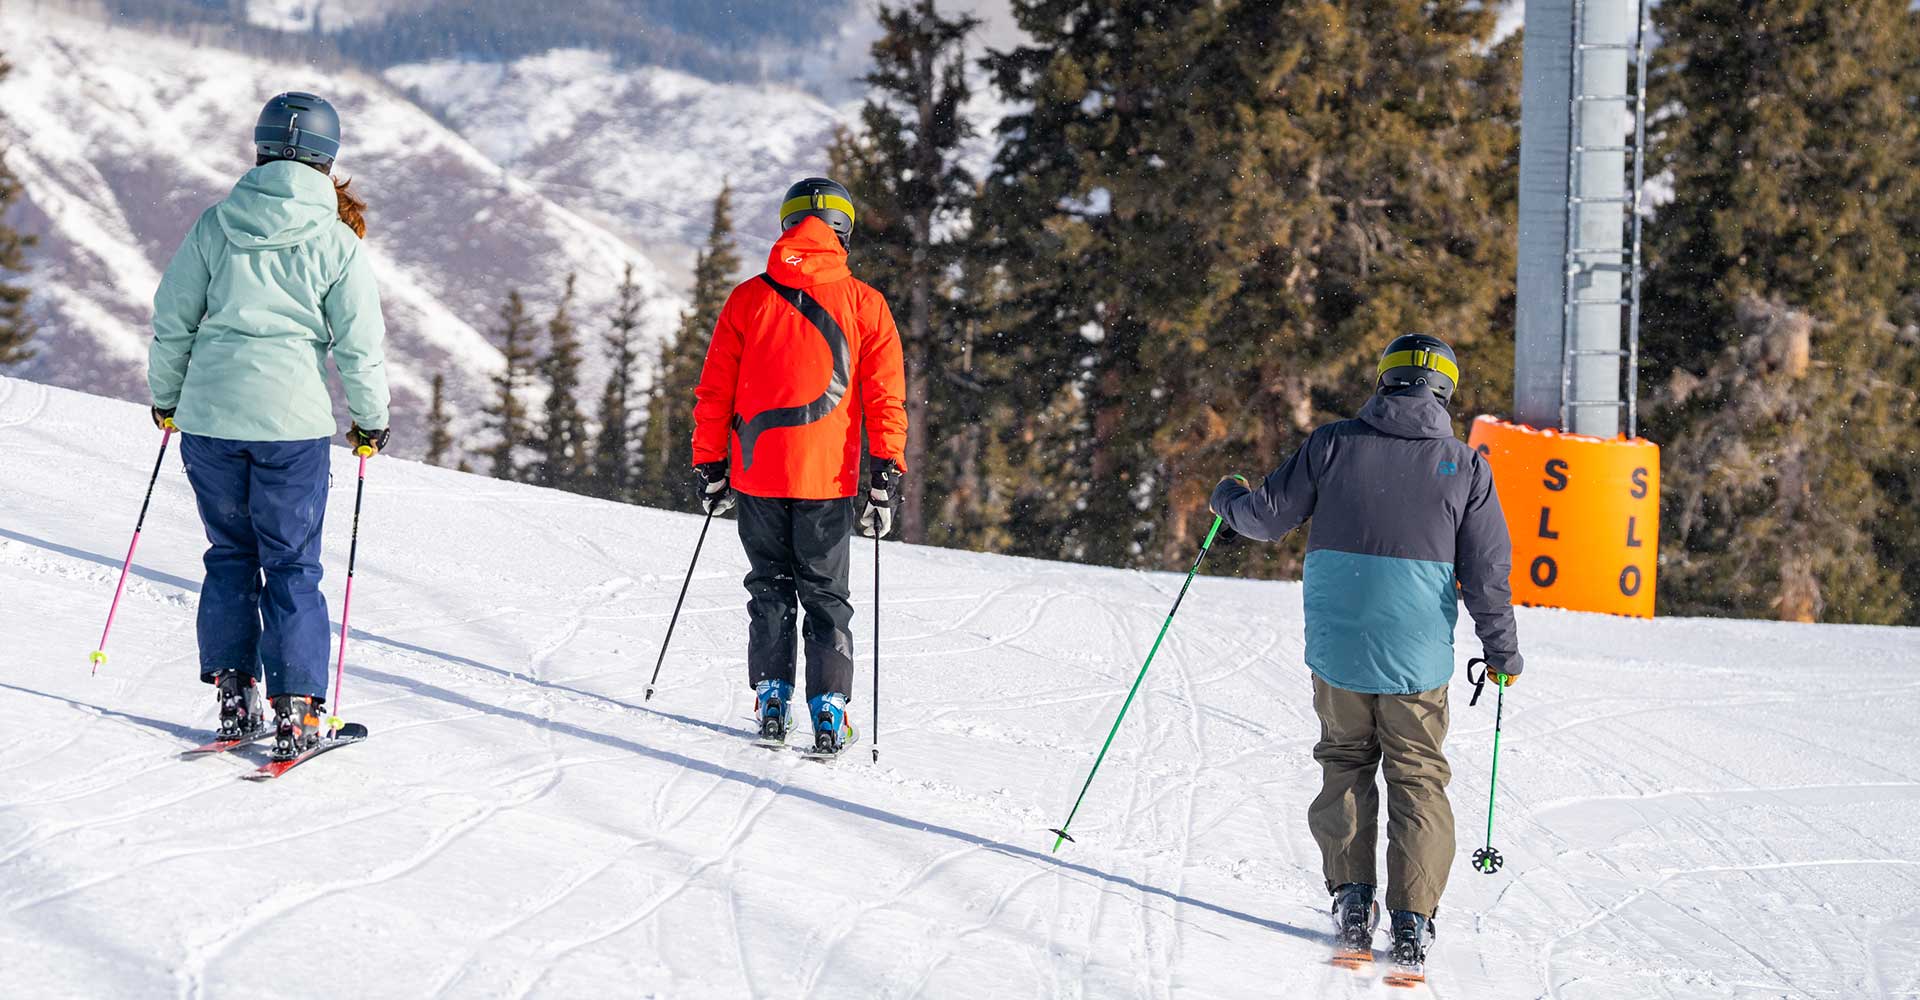 Beginner skiers at Aspen Snowmass